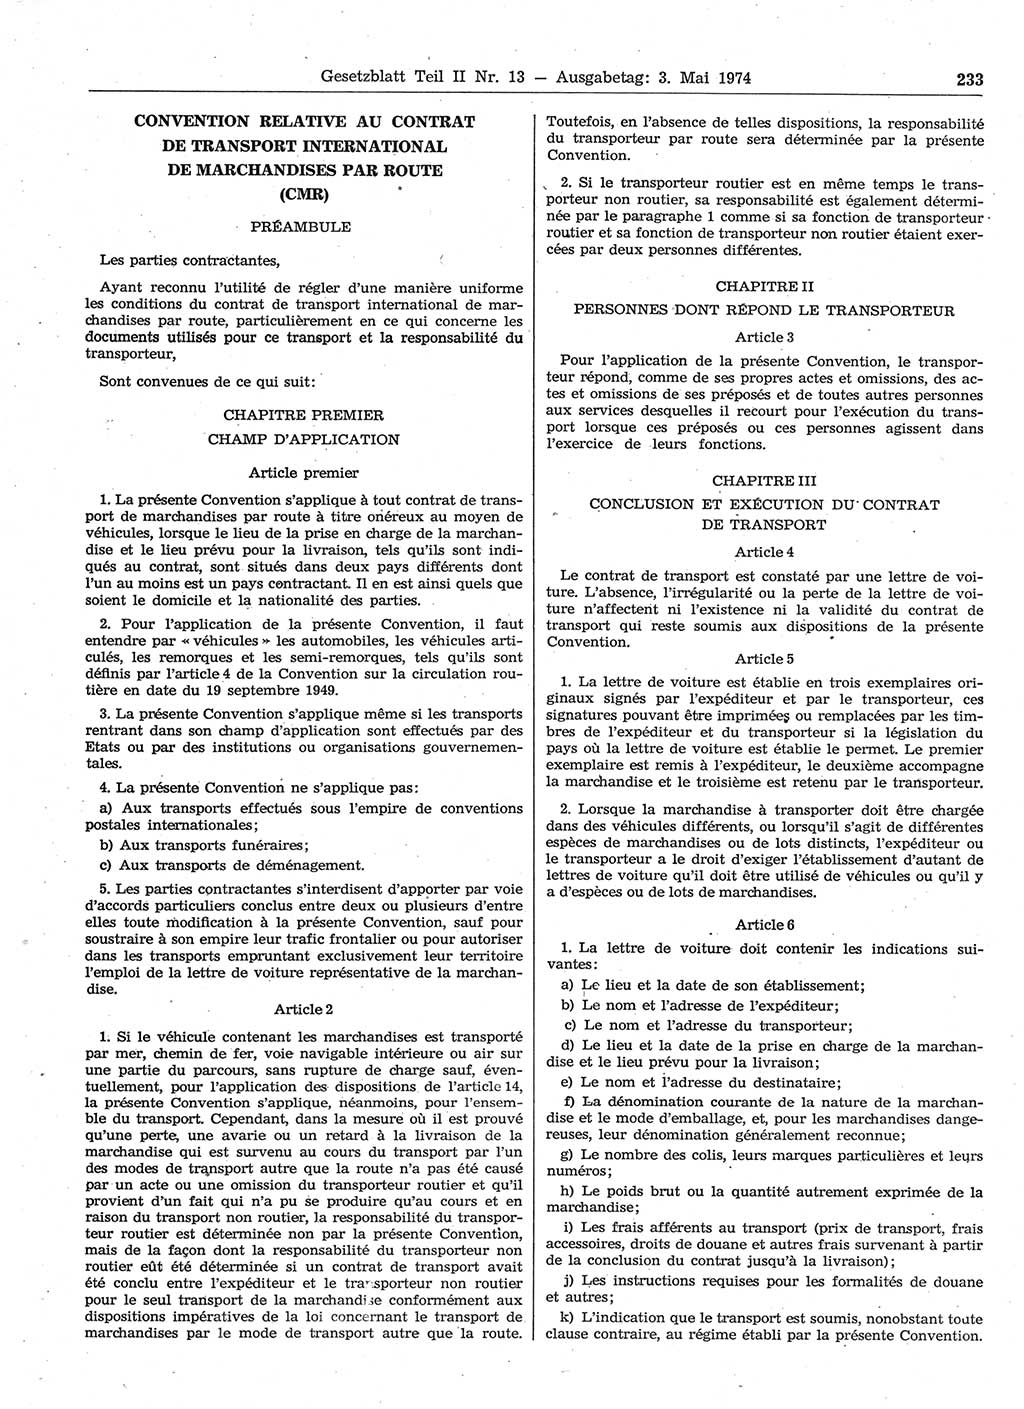 Gesetzblatt (GBl.) der Deutschen Demokratischen Republik (DDR) Teil ⅠⅠ 1974, Seite 233 (GBl. DDR ⅠⅠ 1974, S. 233)